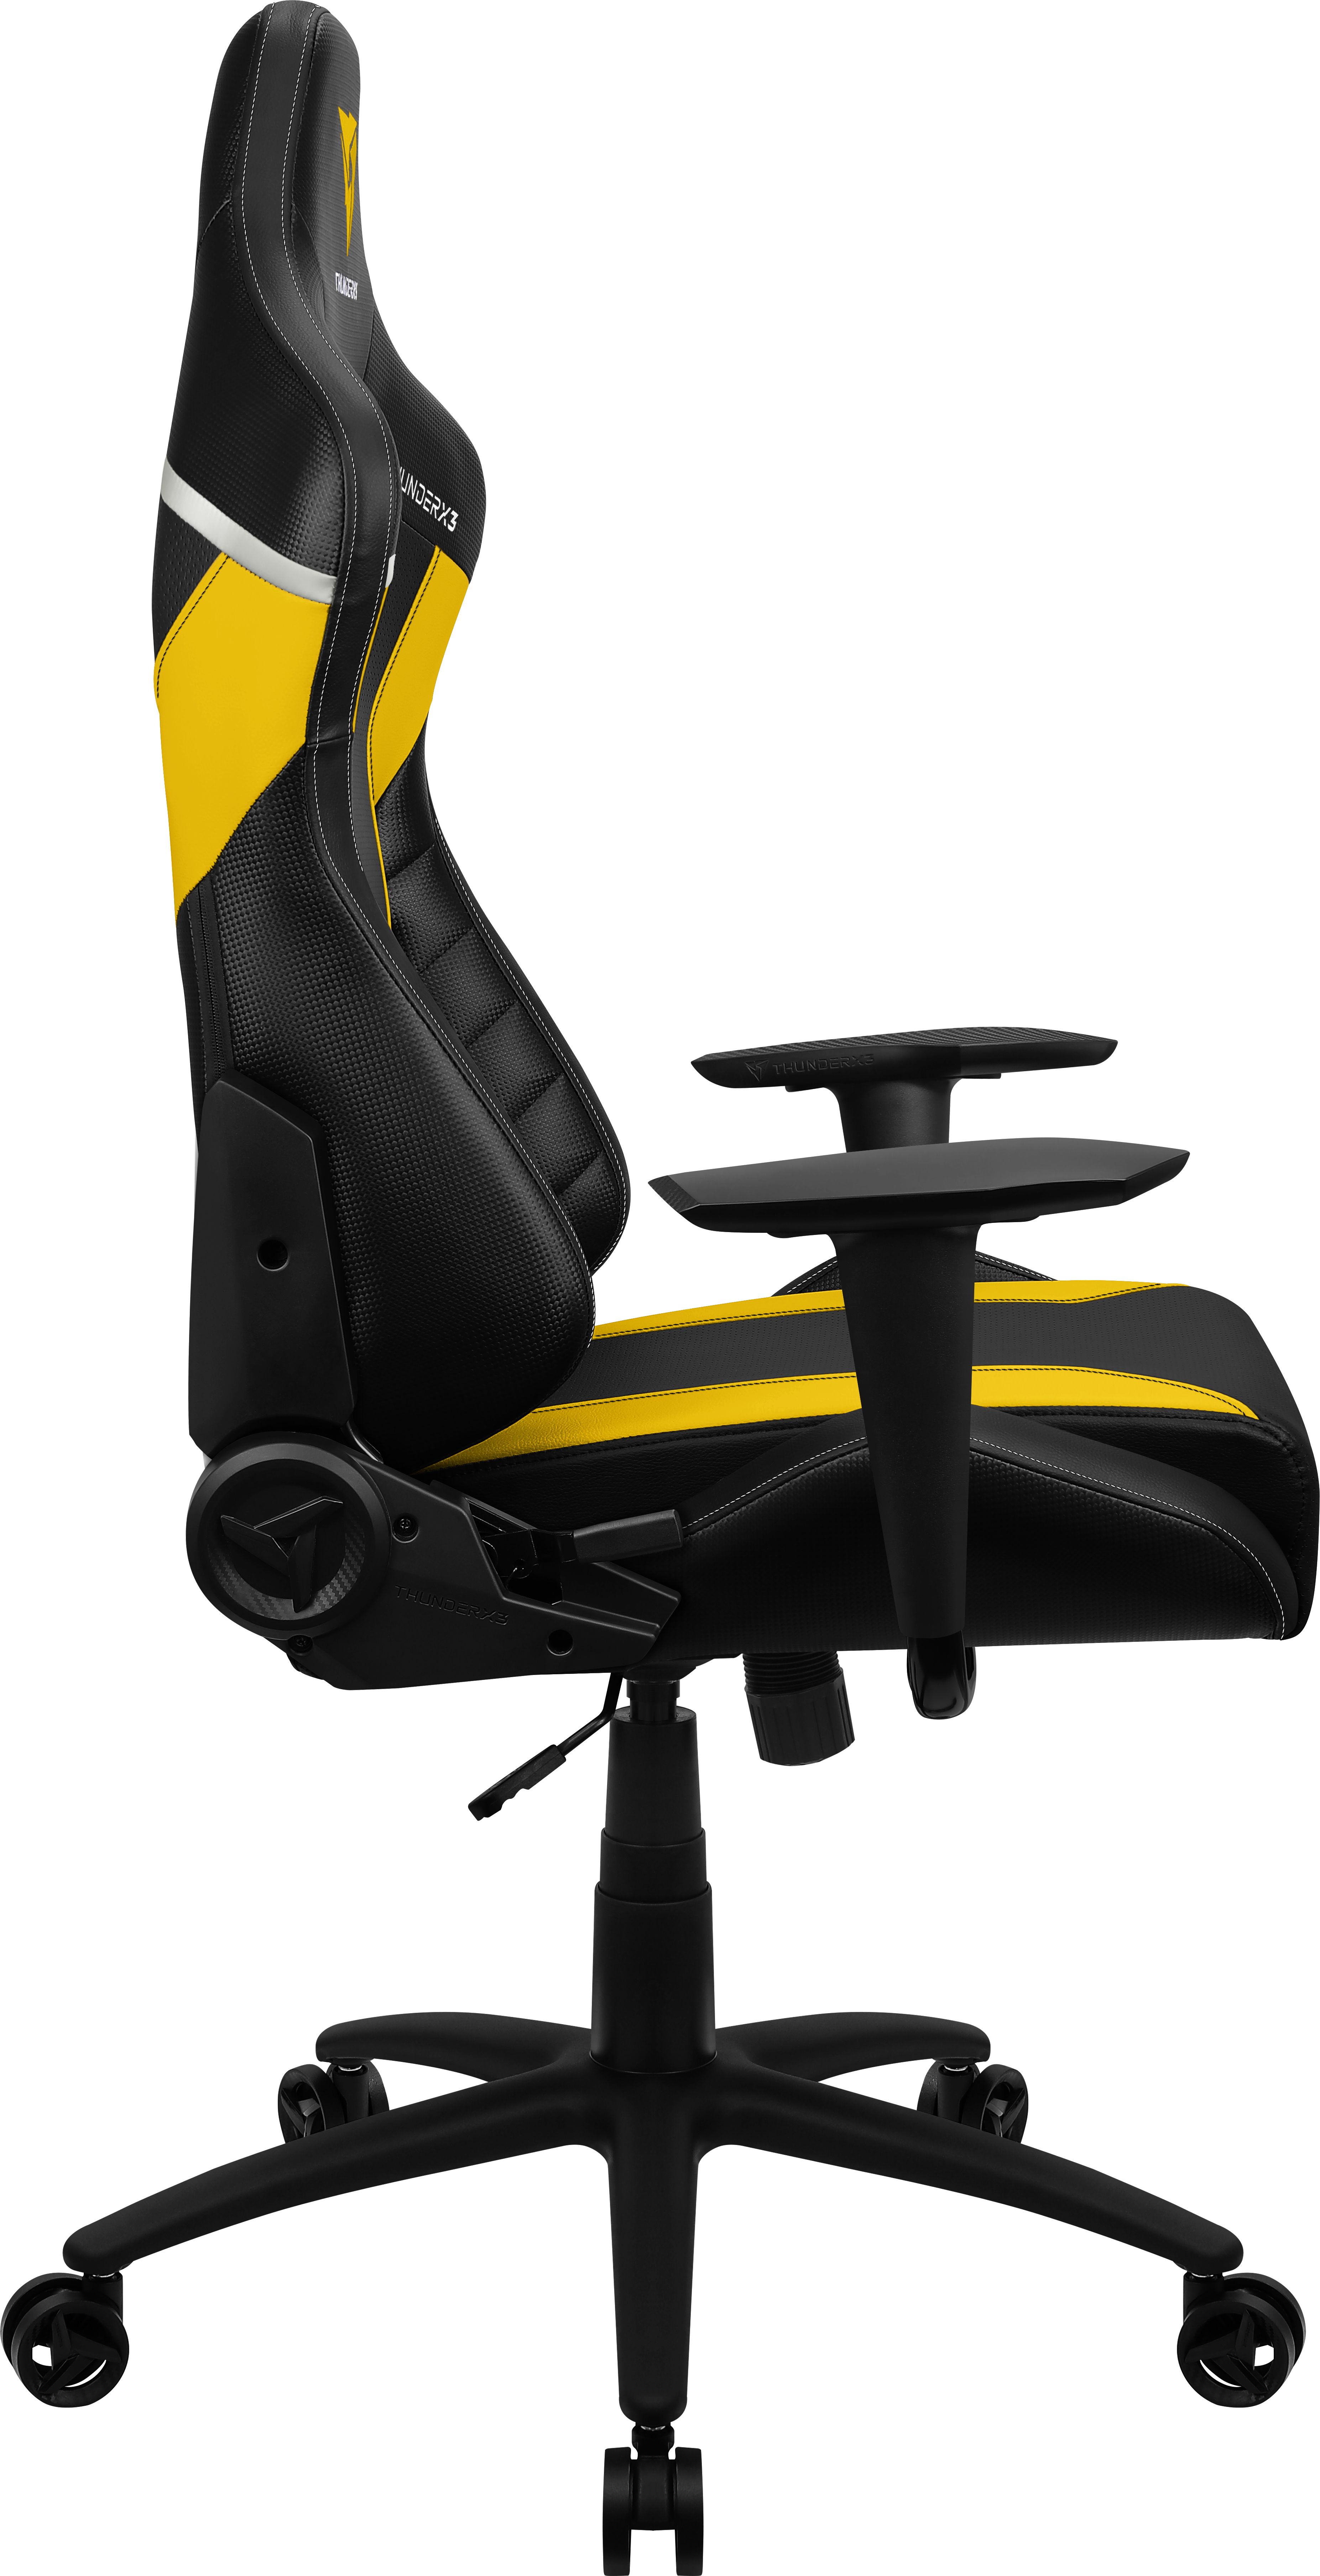 Gamer szék ThunderX3 TC3 Bumblebee Yellow Fekete/Sárga 